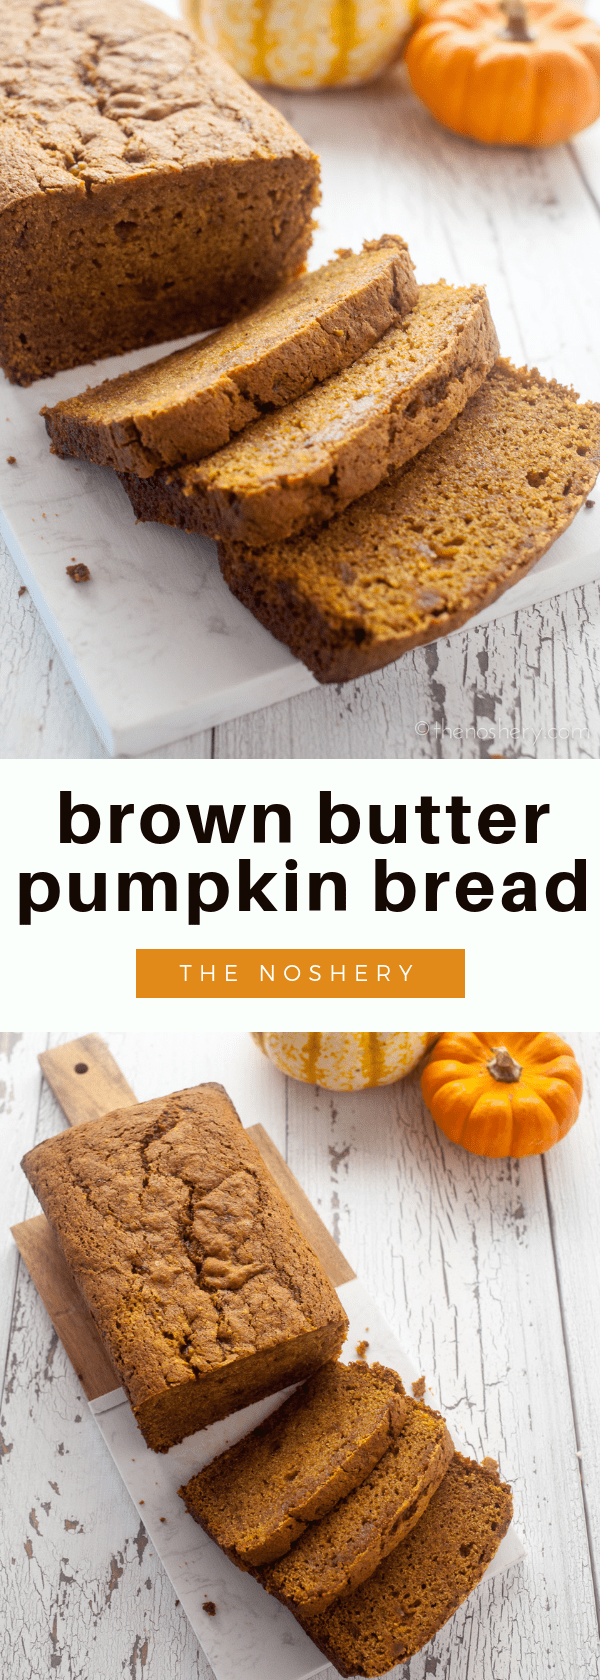 Brown Butter Pumpkin Bread - The Noshery